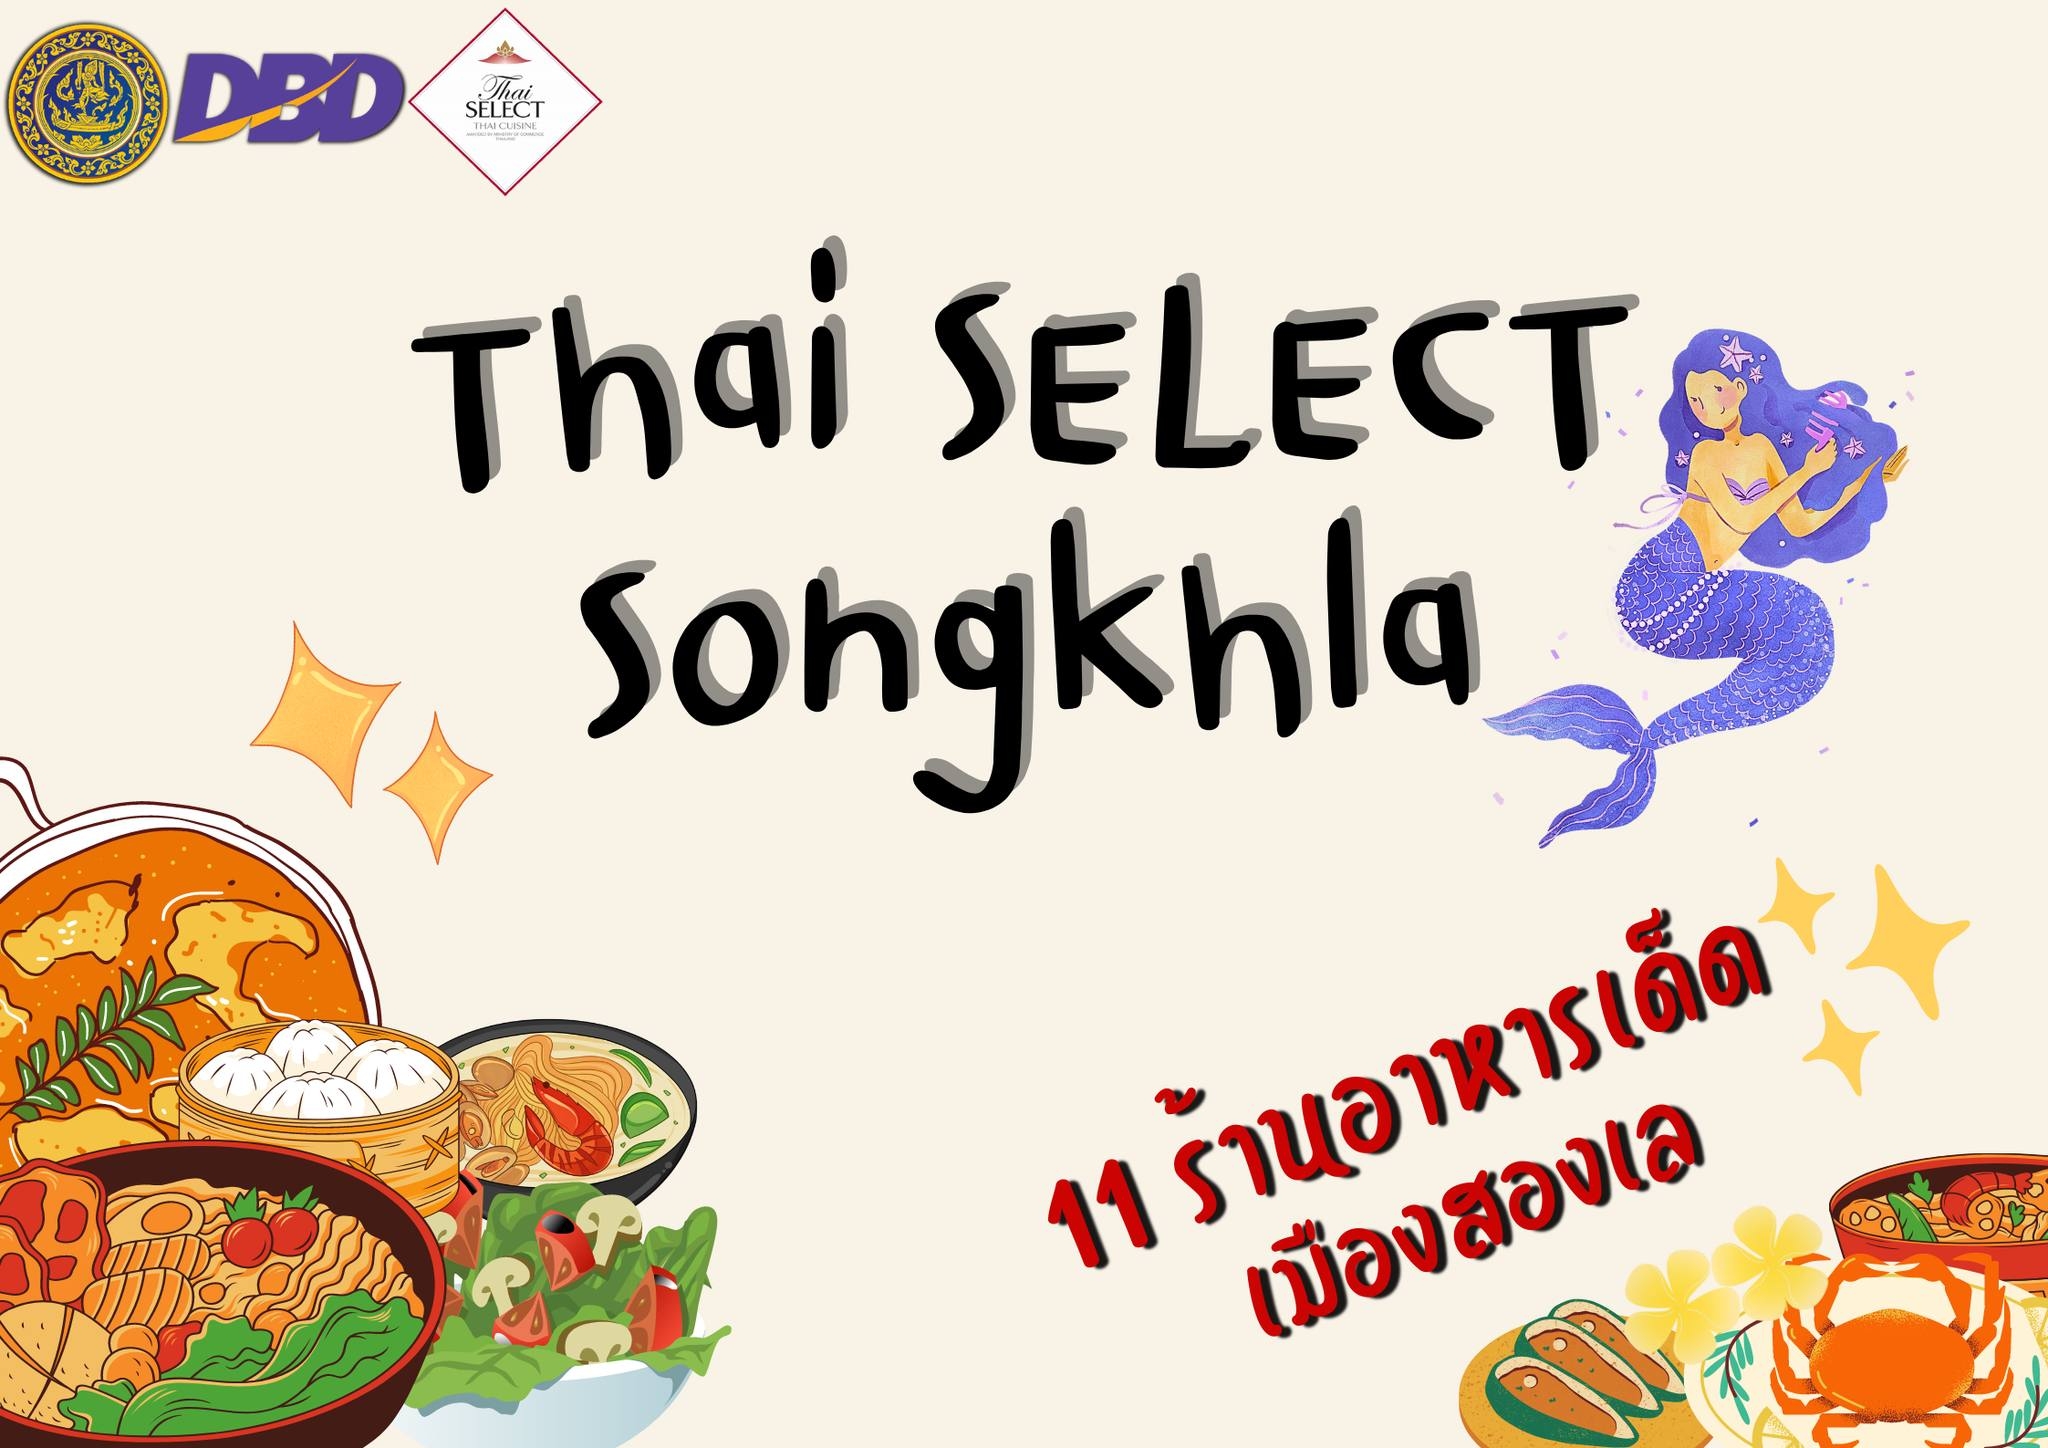 สำนักงานพาณิชย์จังหวัดสงขลา ประชาสัมพันธ์ร้านอาหาร Thai SELECT จังหวัดสงขลา จำนวน 11 ร้าน